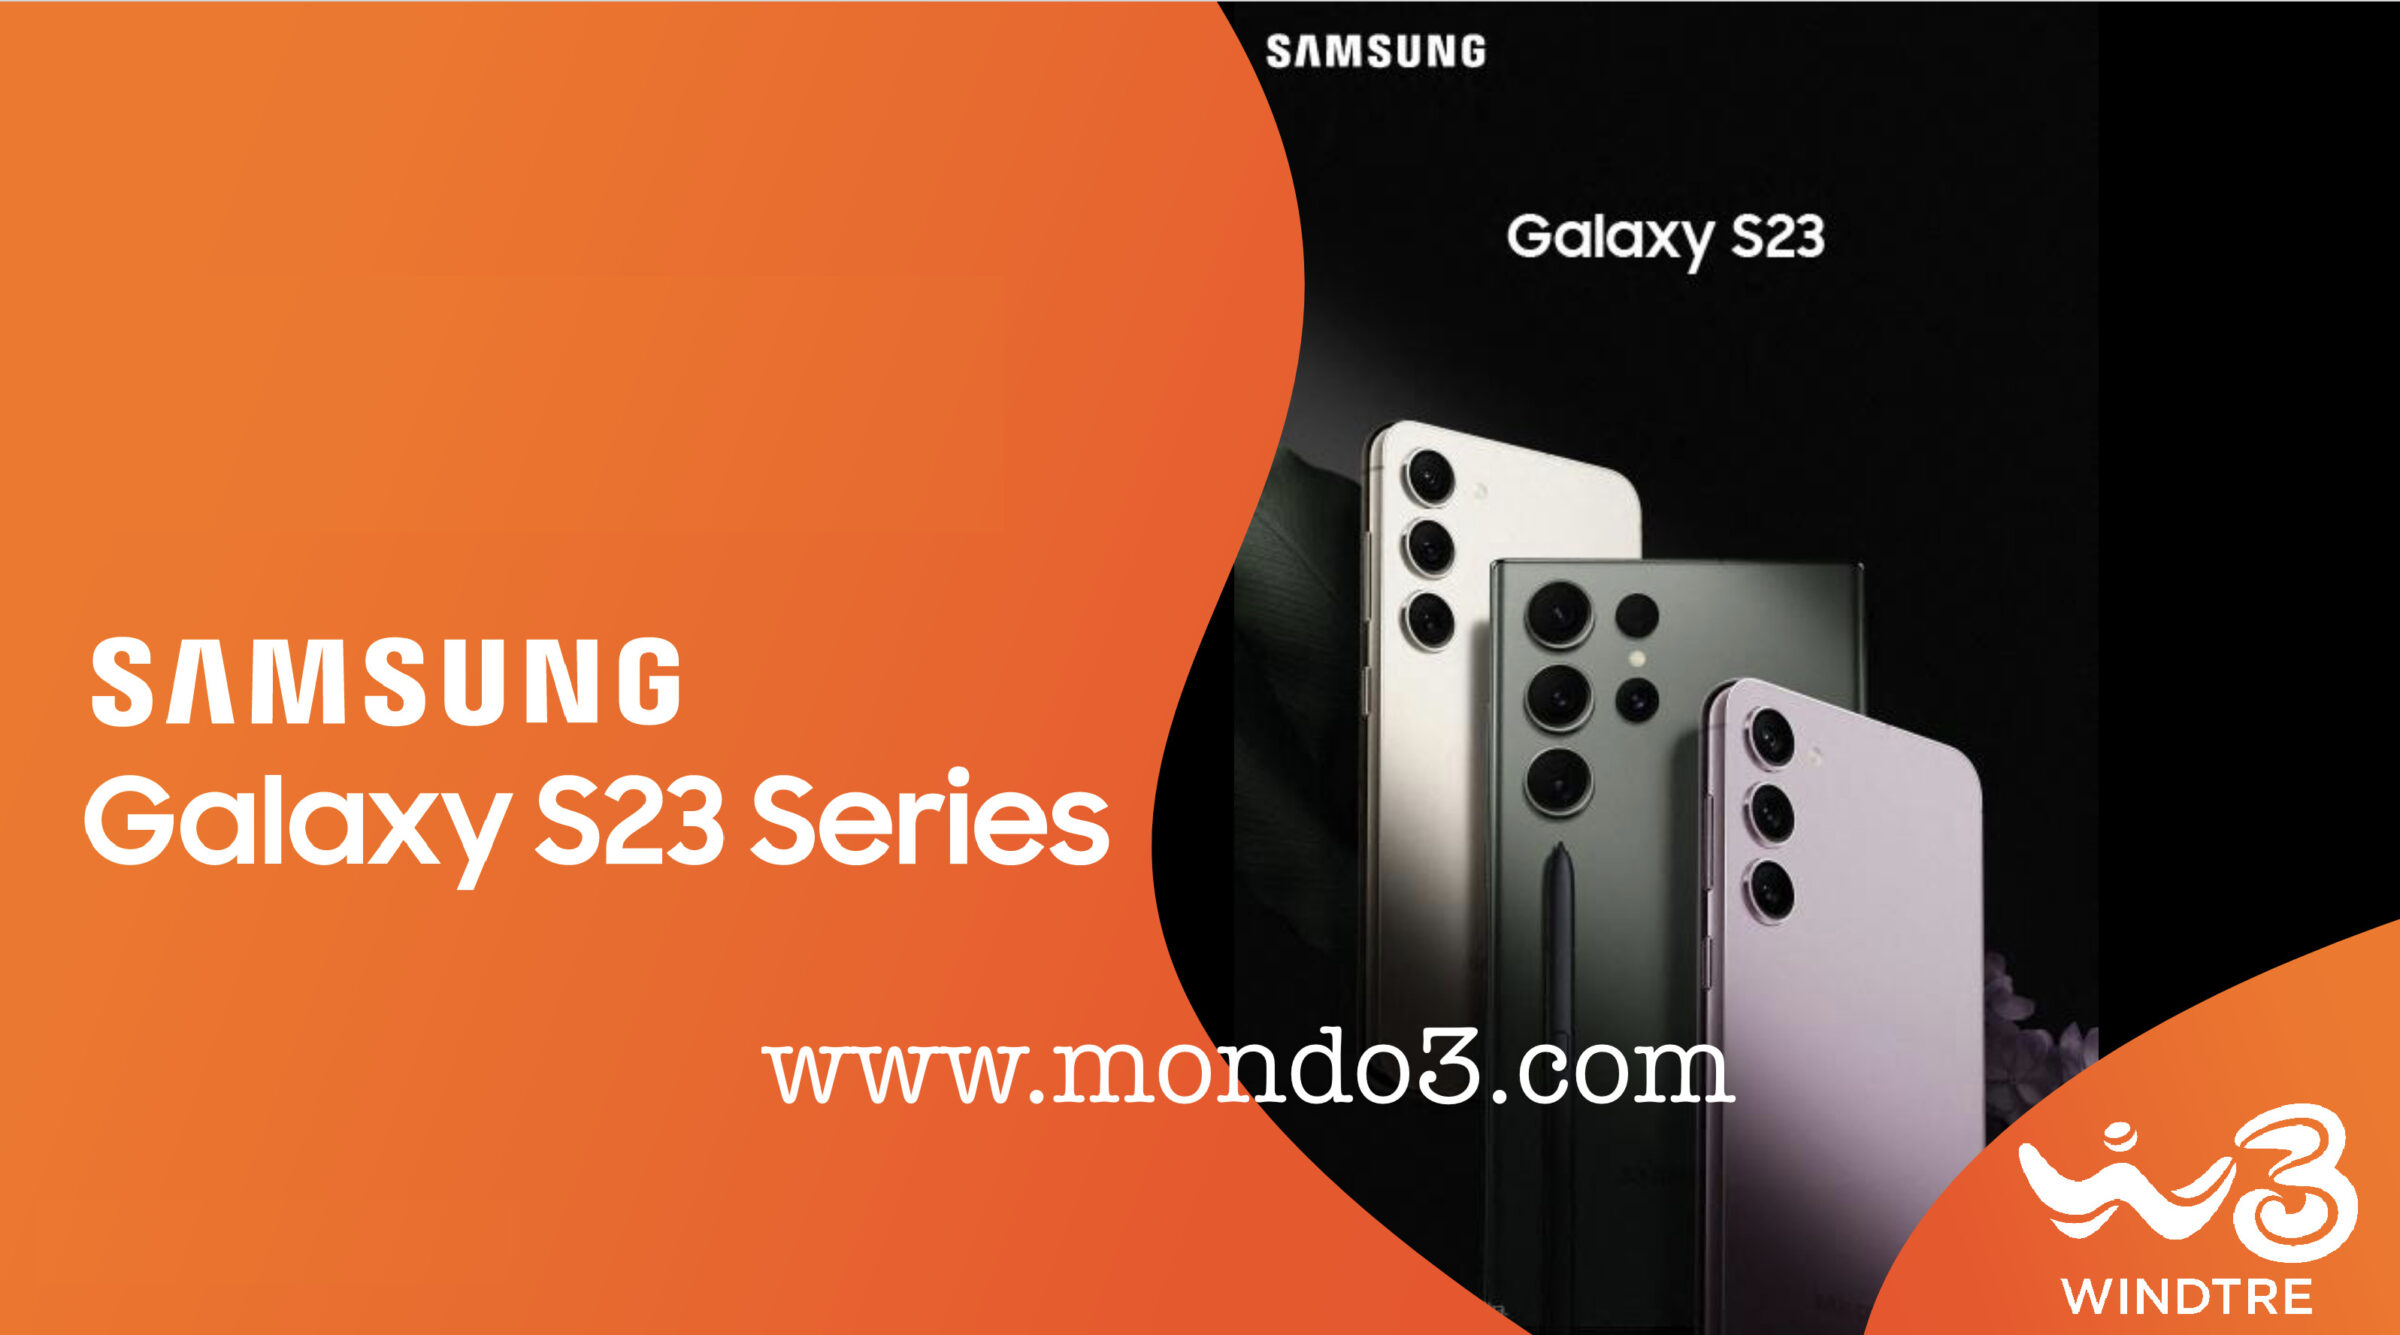 Samsung Galaxy S23: è tempo di Saldi con QUEST'OFFERTA di